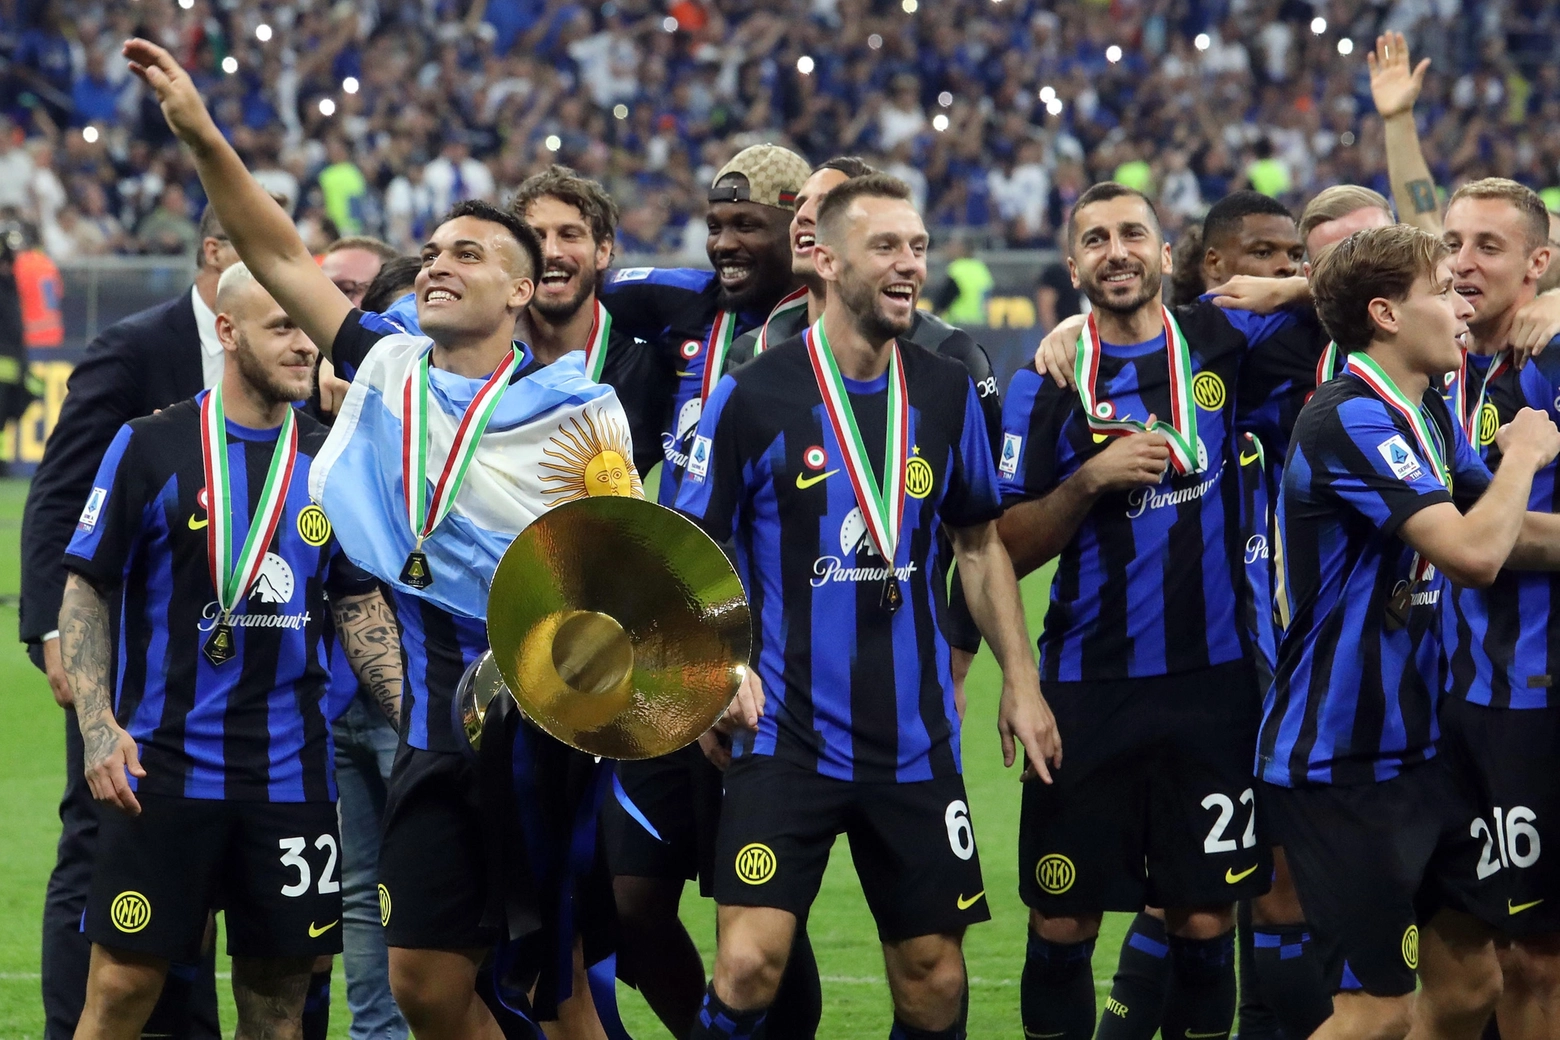 L'Inter festeggia lo scudetto, la consegna al termine della partita contro la Lazio (Ansa)